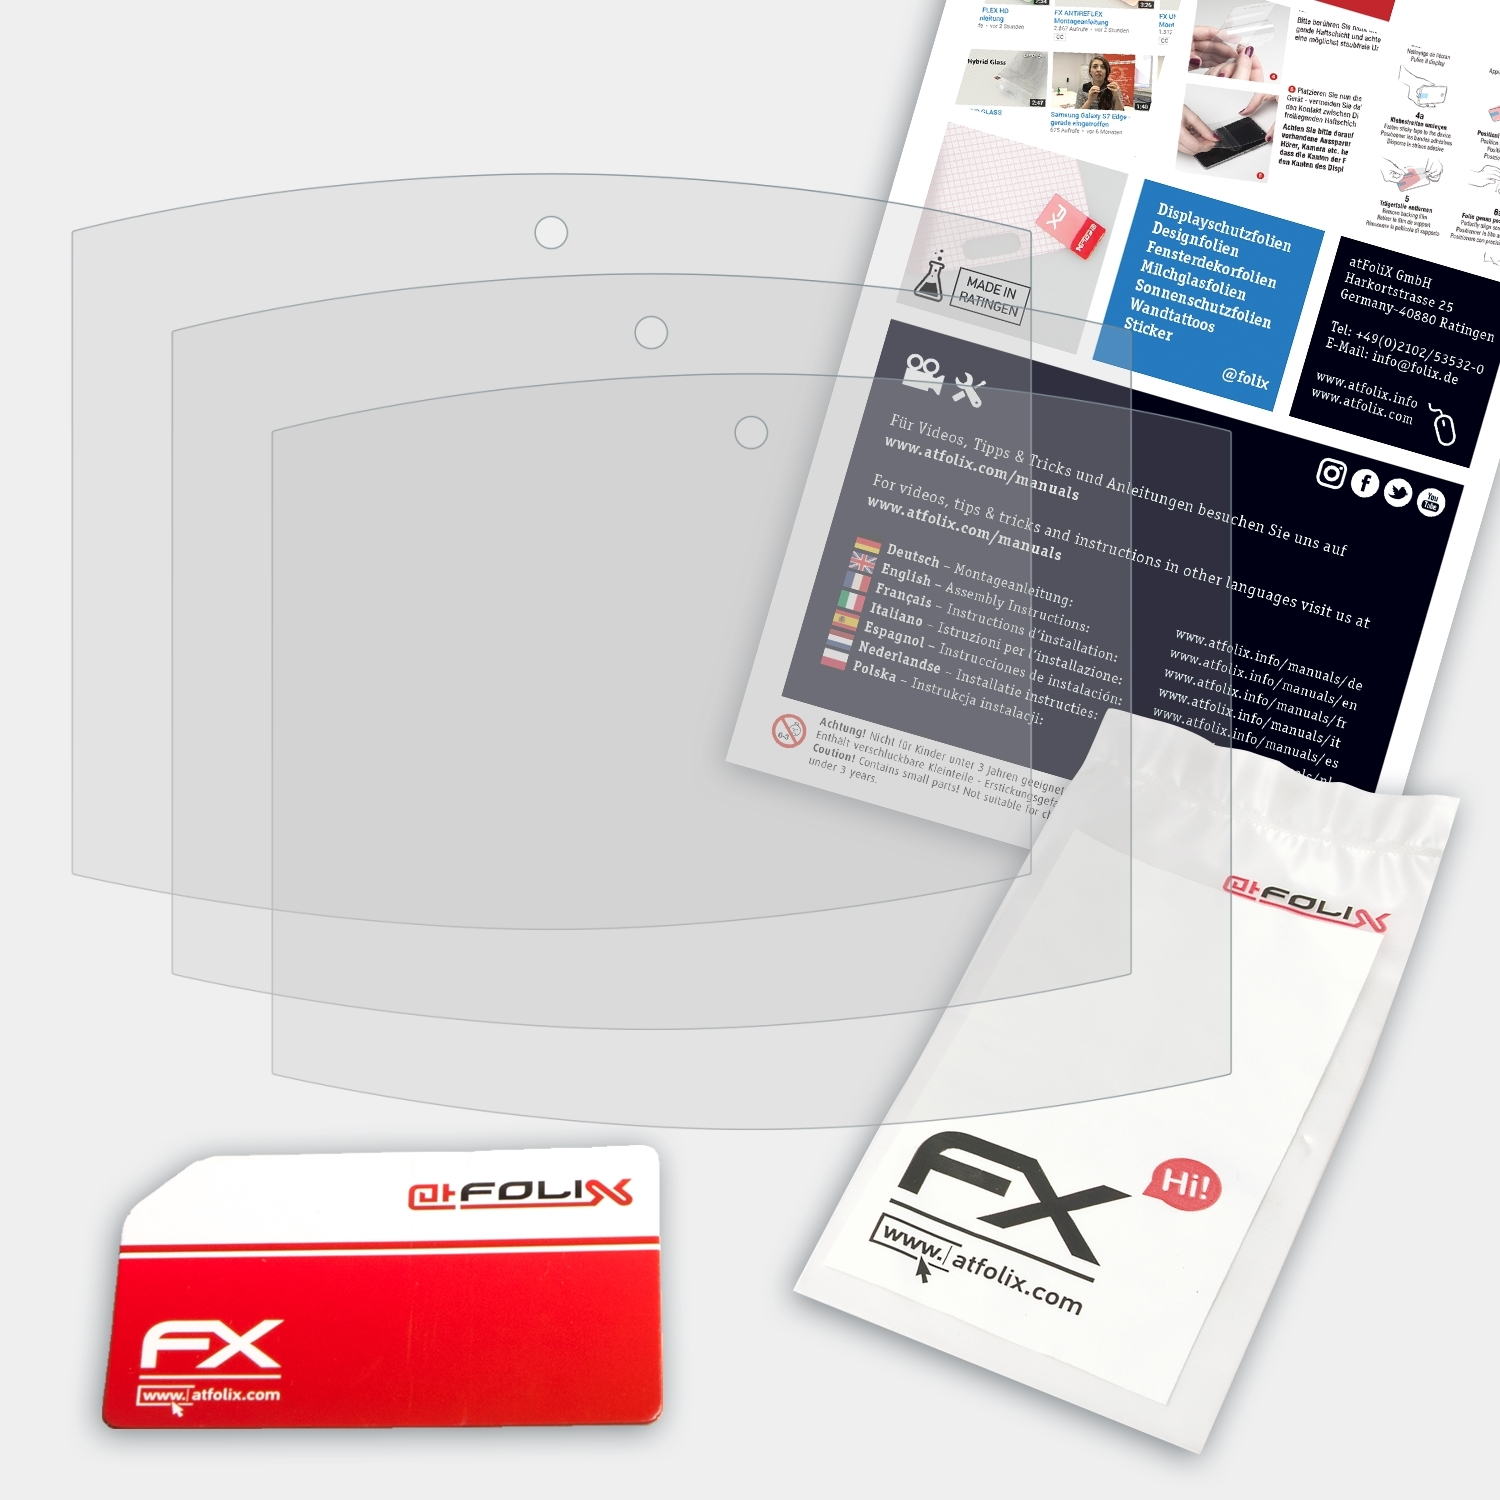 ATFOLIX 3x FX-Antireflex Displayschutz(für Soundpad 500) Orbsmart